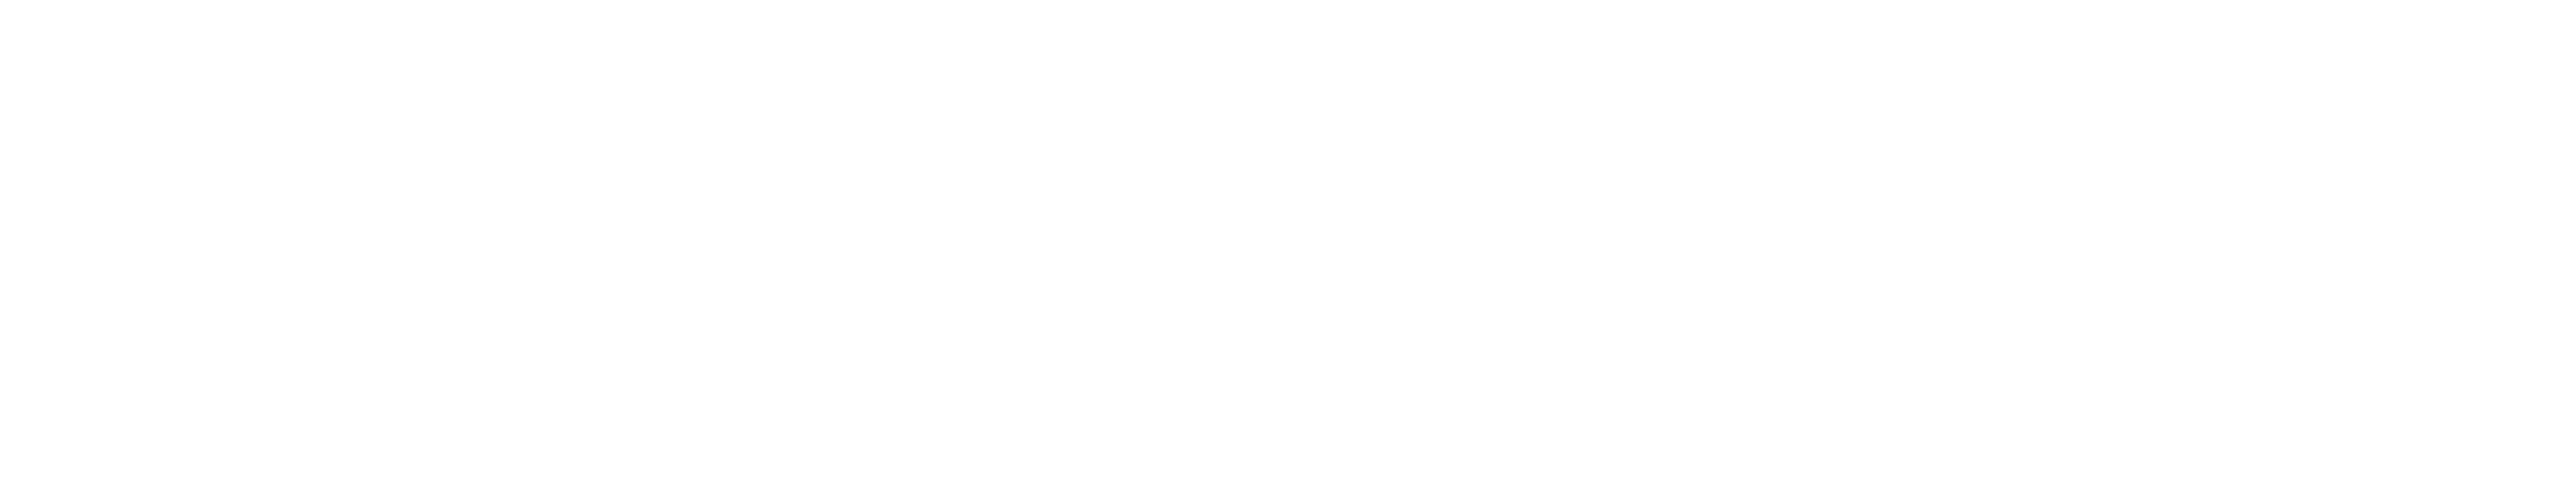 Ghan & Cooper Commercial Properties